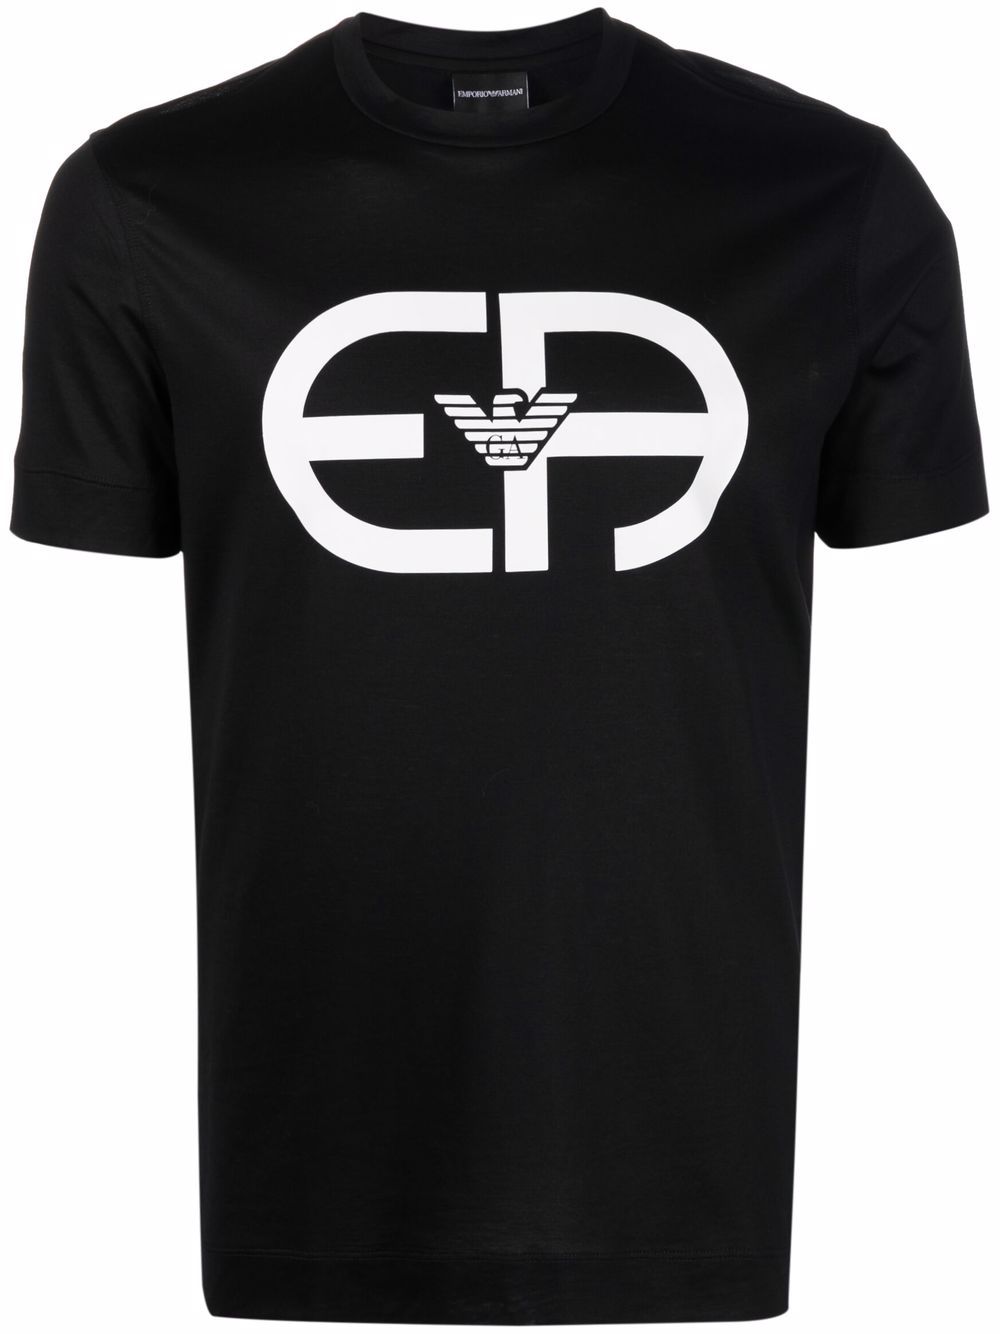 фото Emporio armani футболка с логотипом